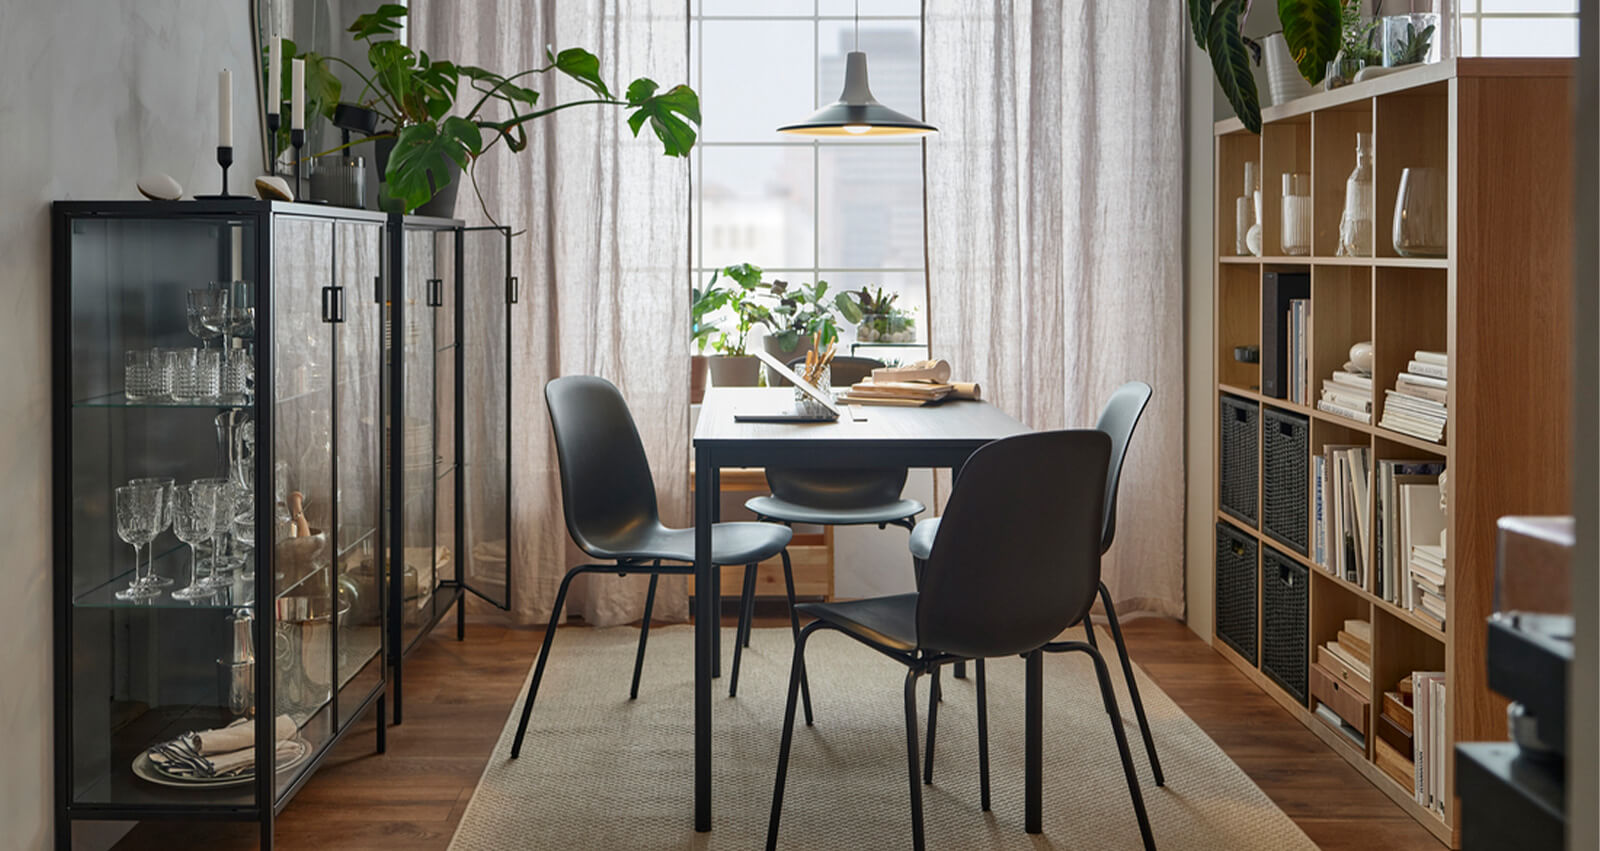 IKEA-havali sofistike bir yemek odasi